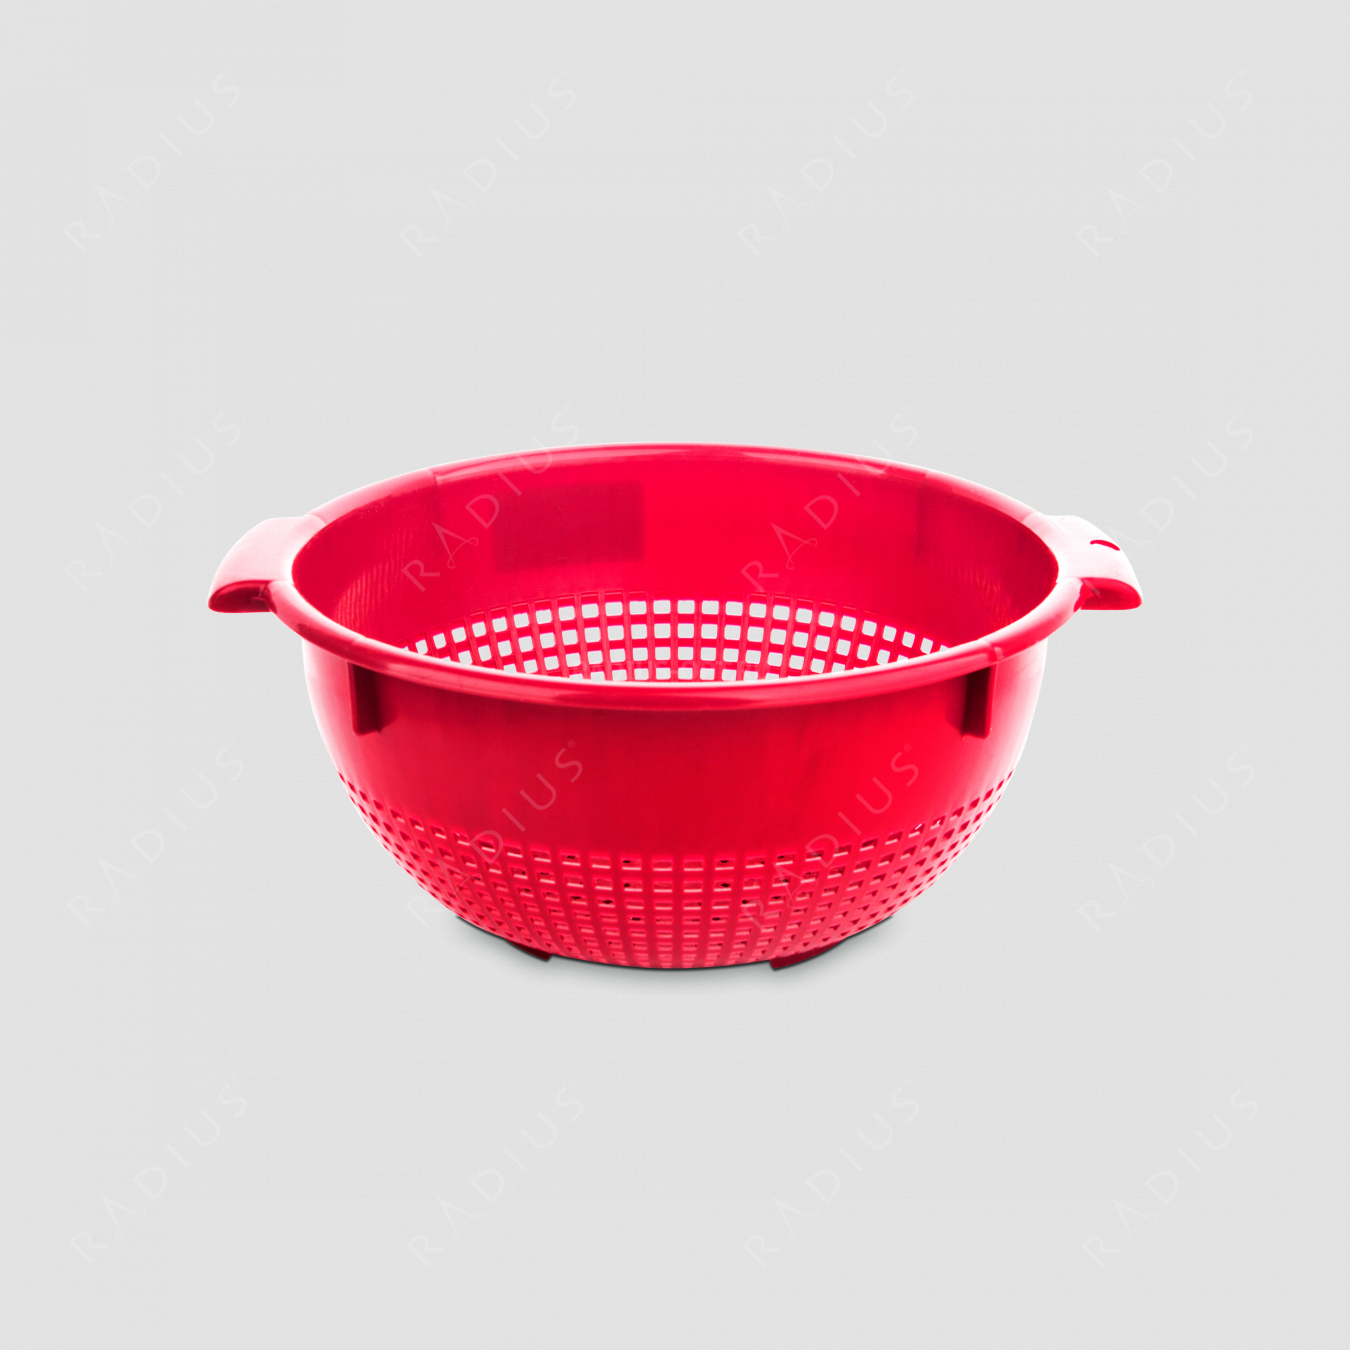 Дуршлаг, диаметр 26 см, цвет красный, серия Plastic tools, Westmark, Германия